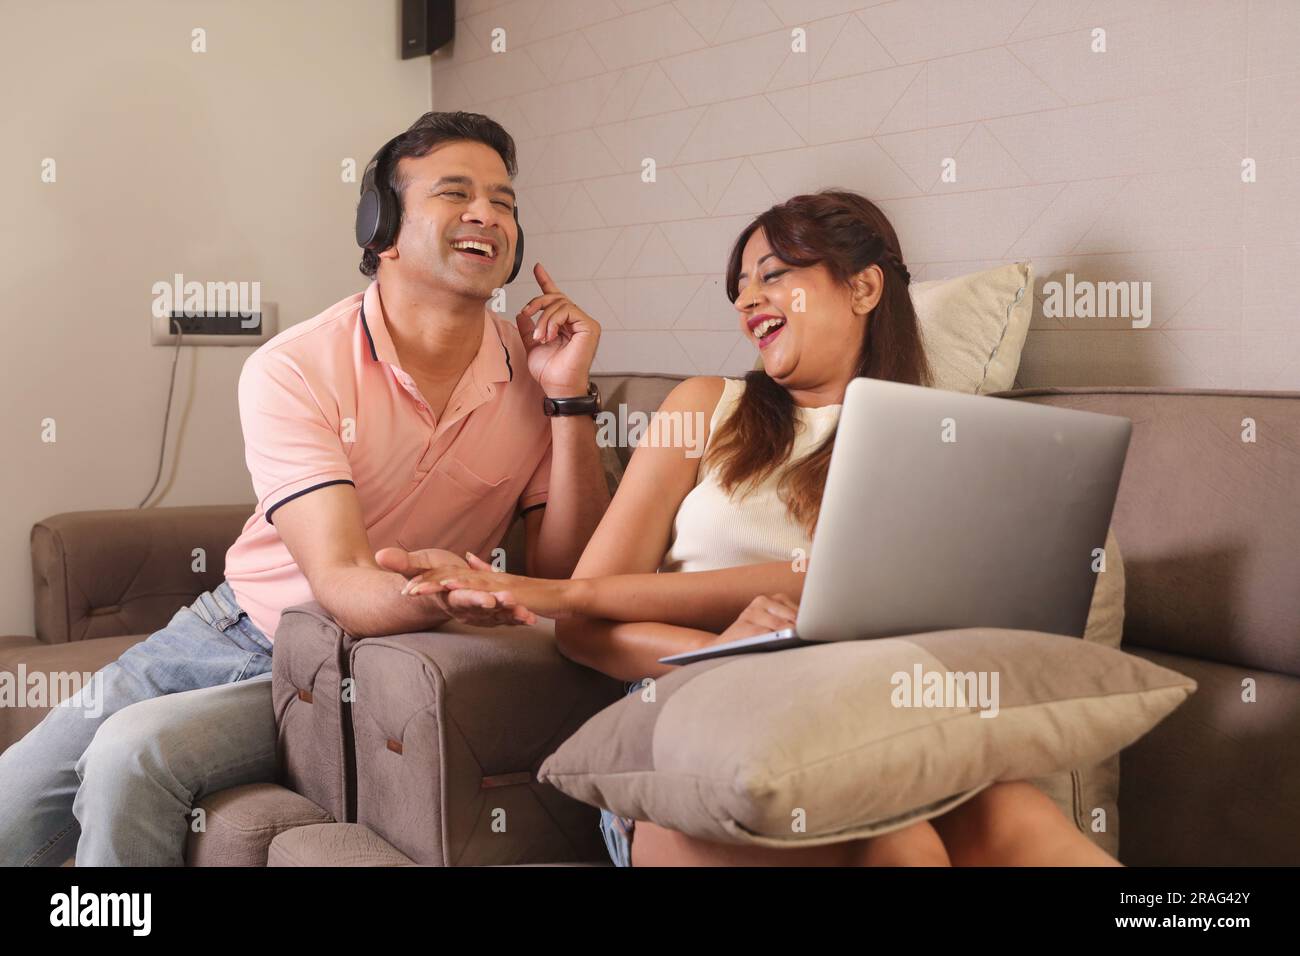 Indiano coppia felice mangiare insalata e dieta sana seduti su un divano tenendo un portatile navigare online. Ascolto di musica Foto Stock